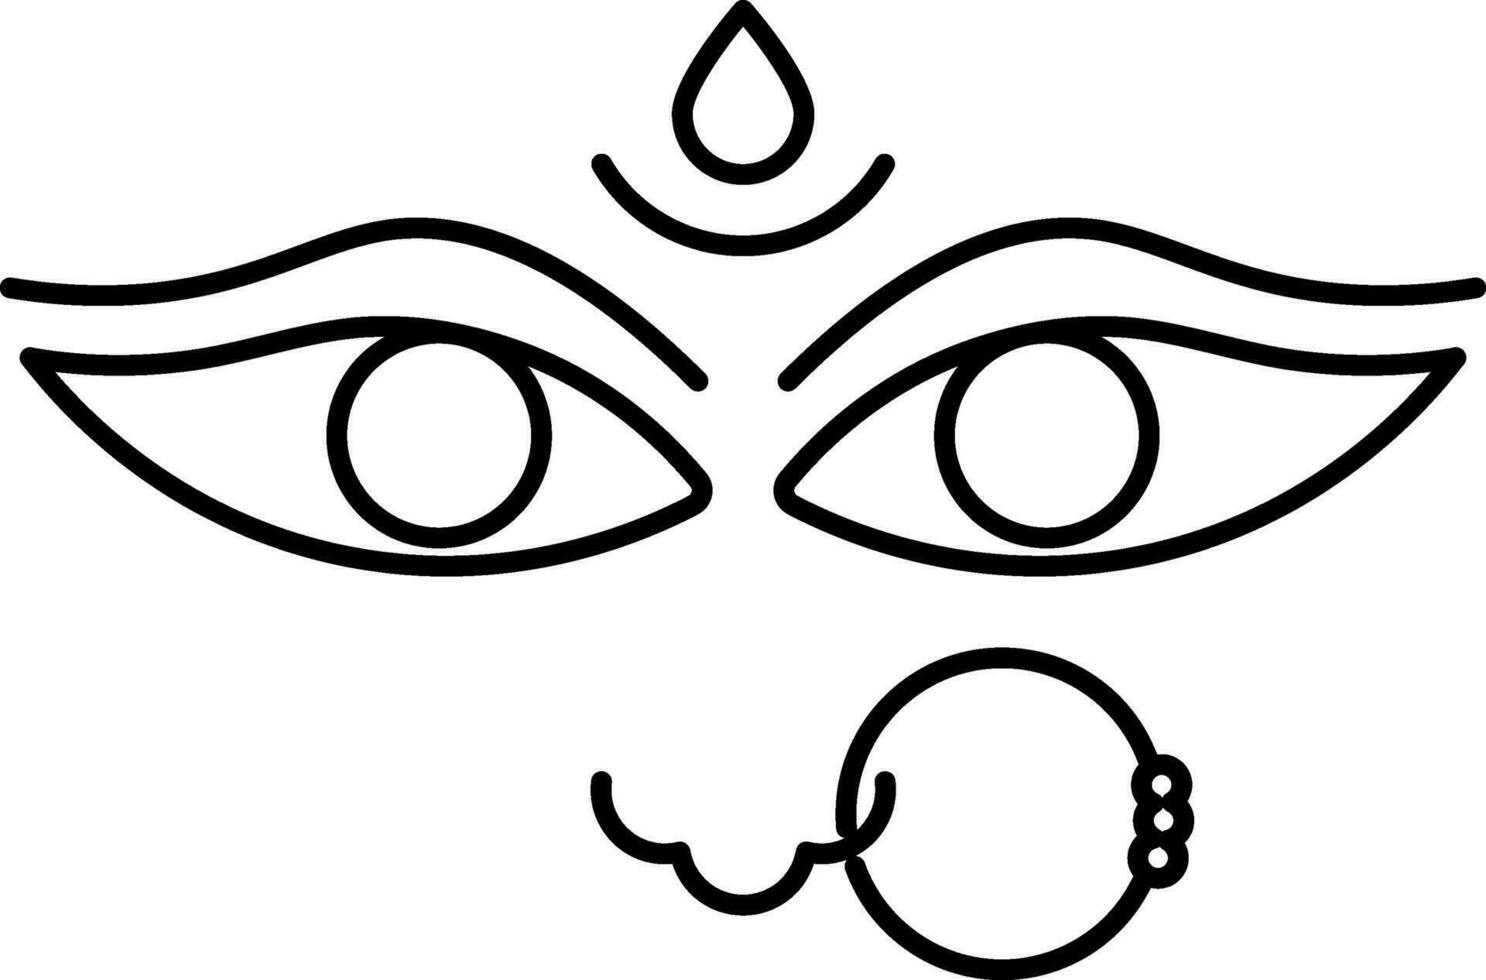 Goddess Maa Durga Face Black Stroke Icon Or Symbol. vector